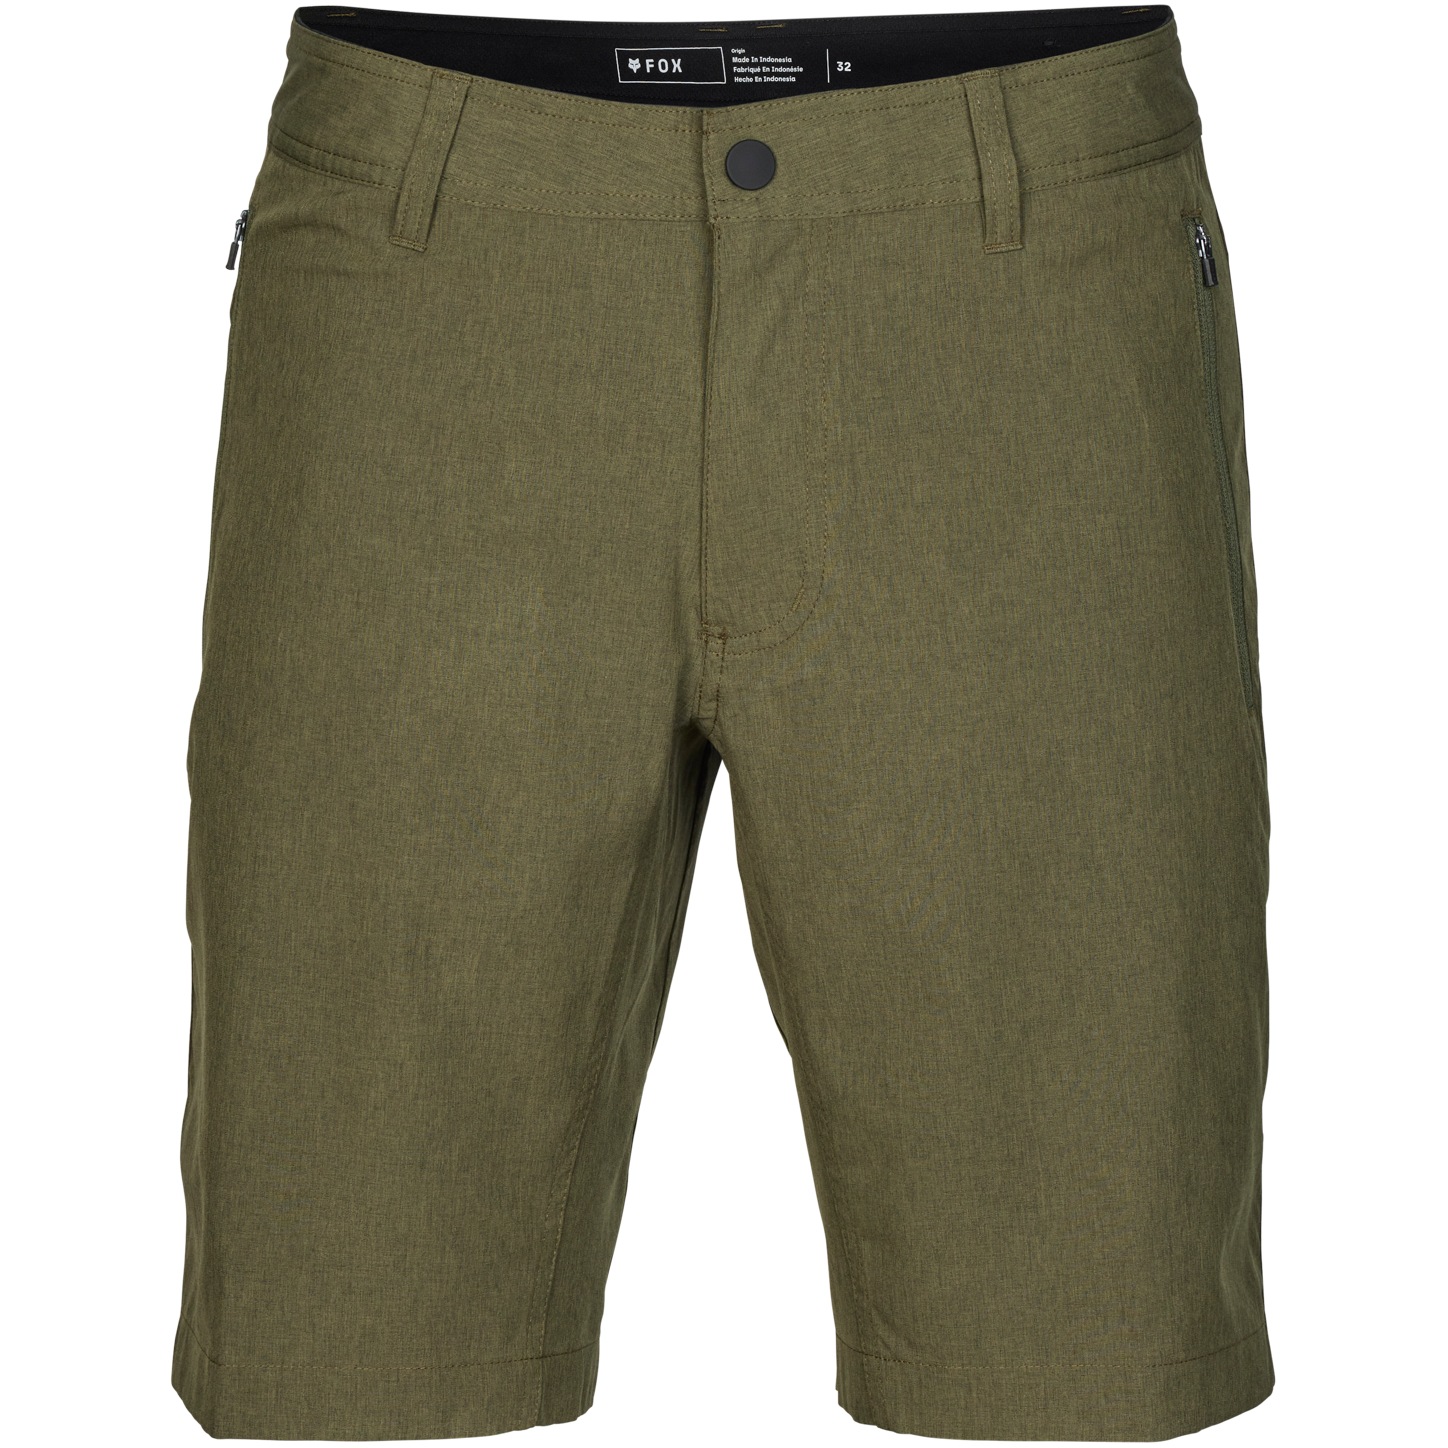 Produktbild von FOX Machete Tech Shorts Herren - olive green